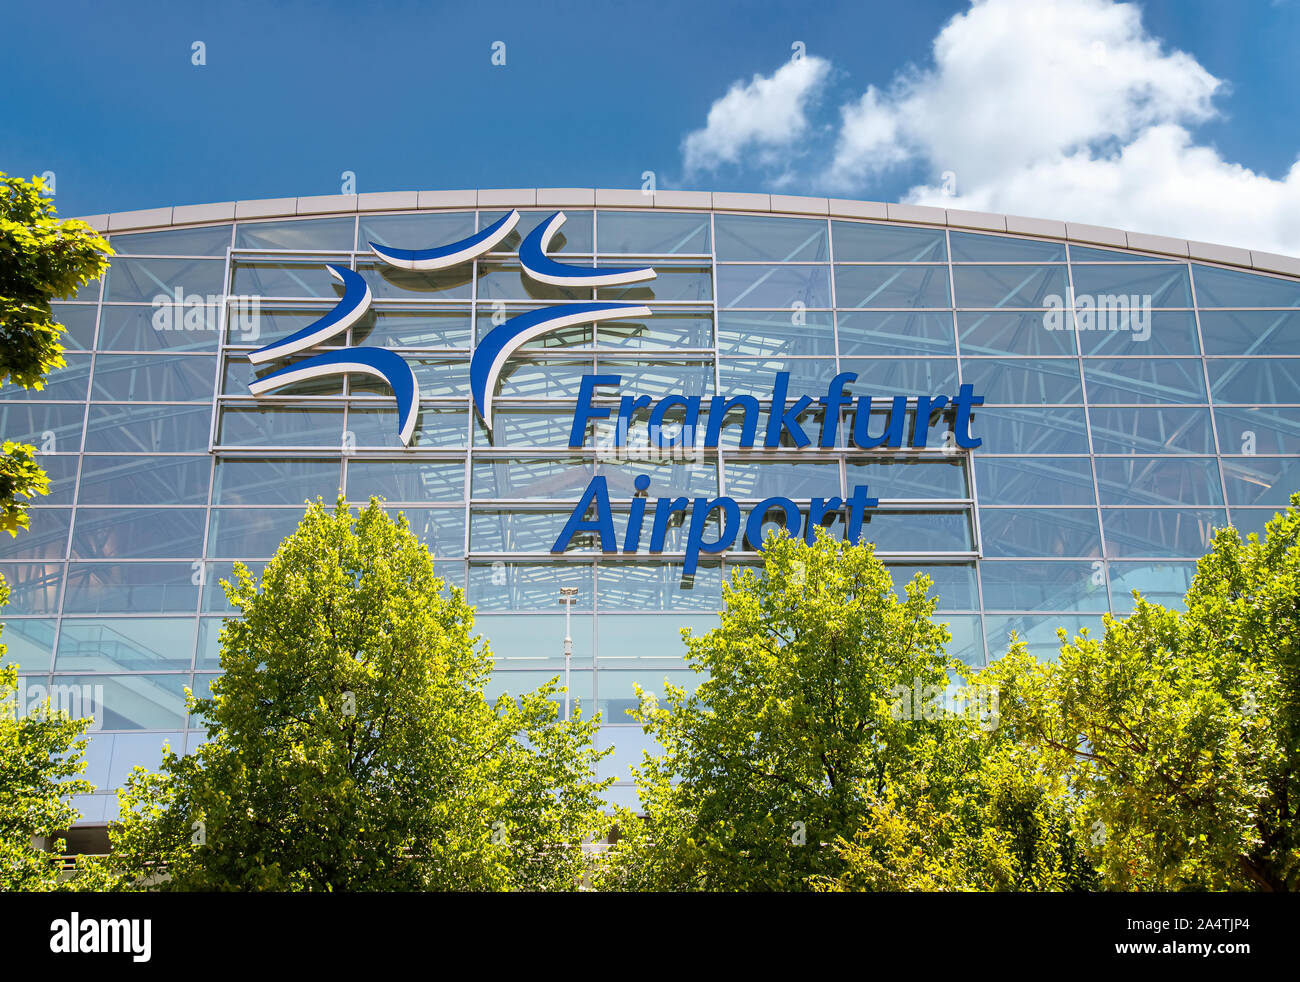 Francfort, Hesse / Allemagne - 21 juillet 2019Façade de l'aérogare 2 à l'aéroport de Francfort avec le logo de Fraport Banque D'Images